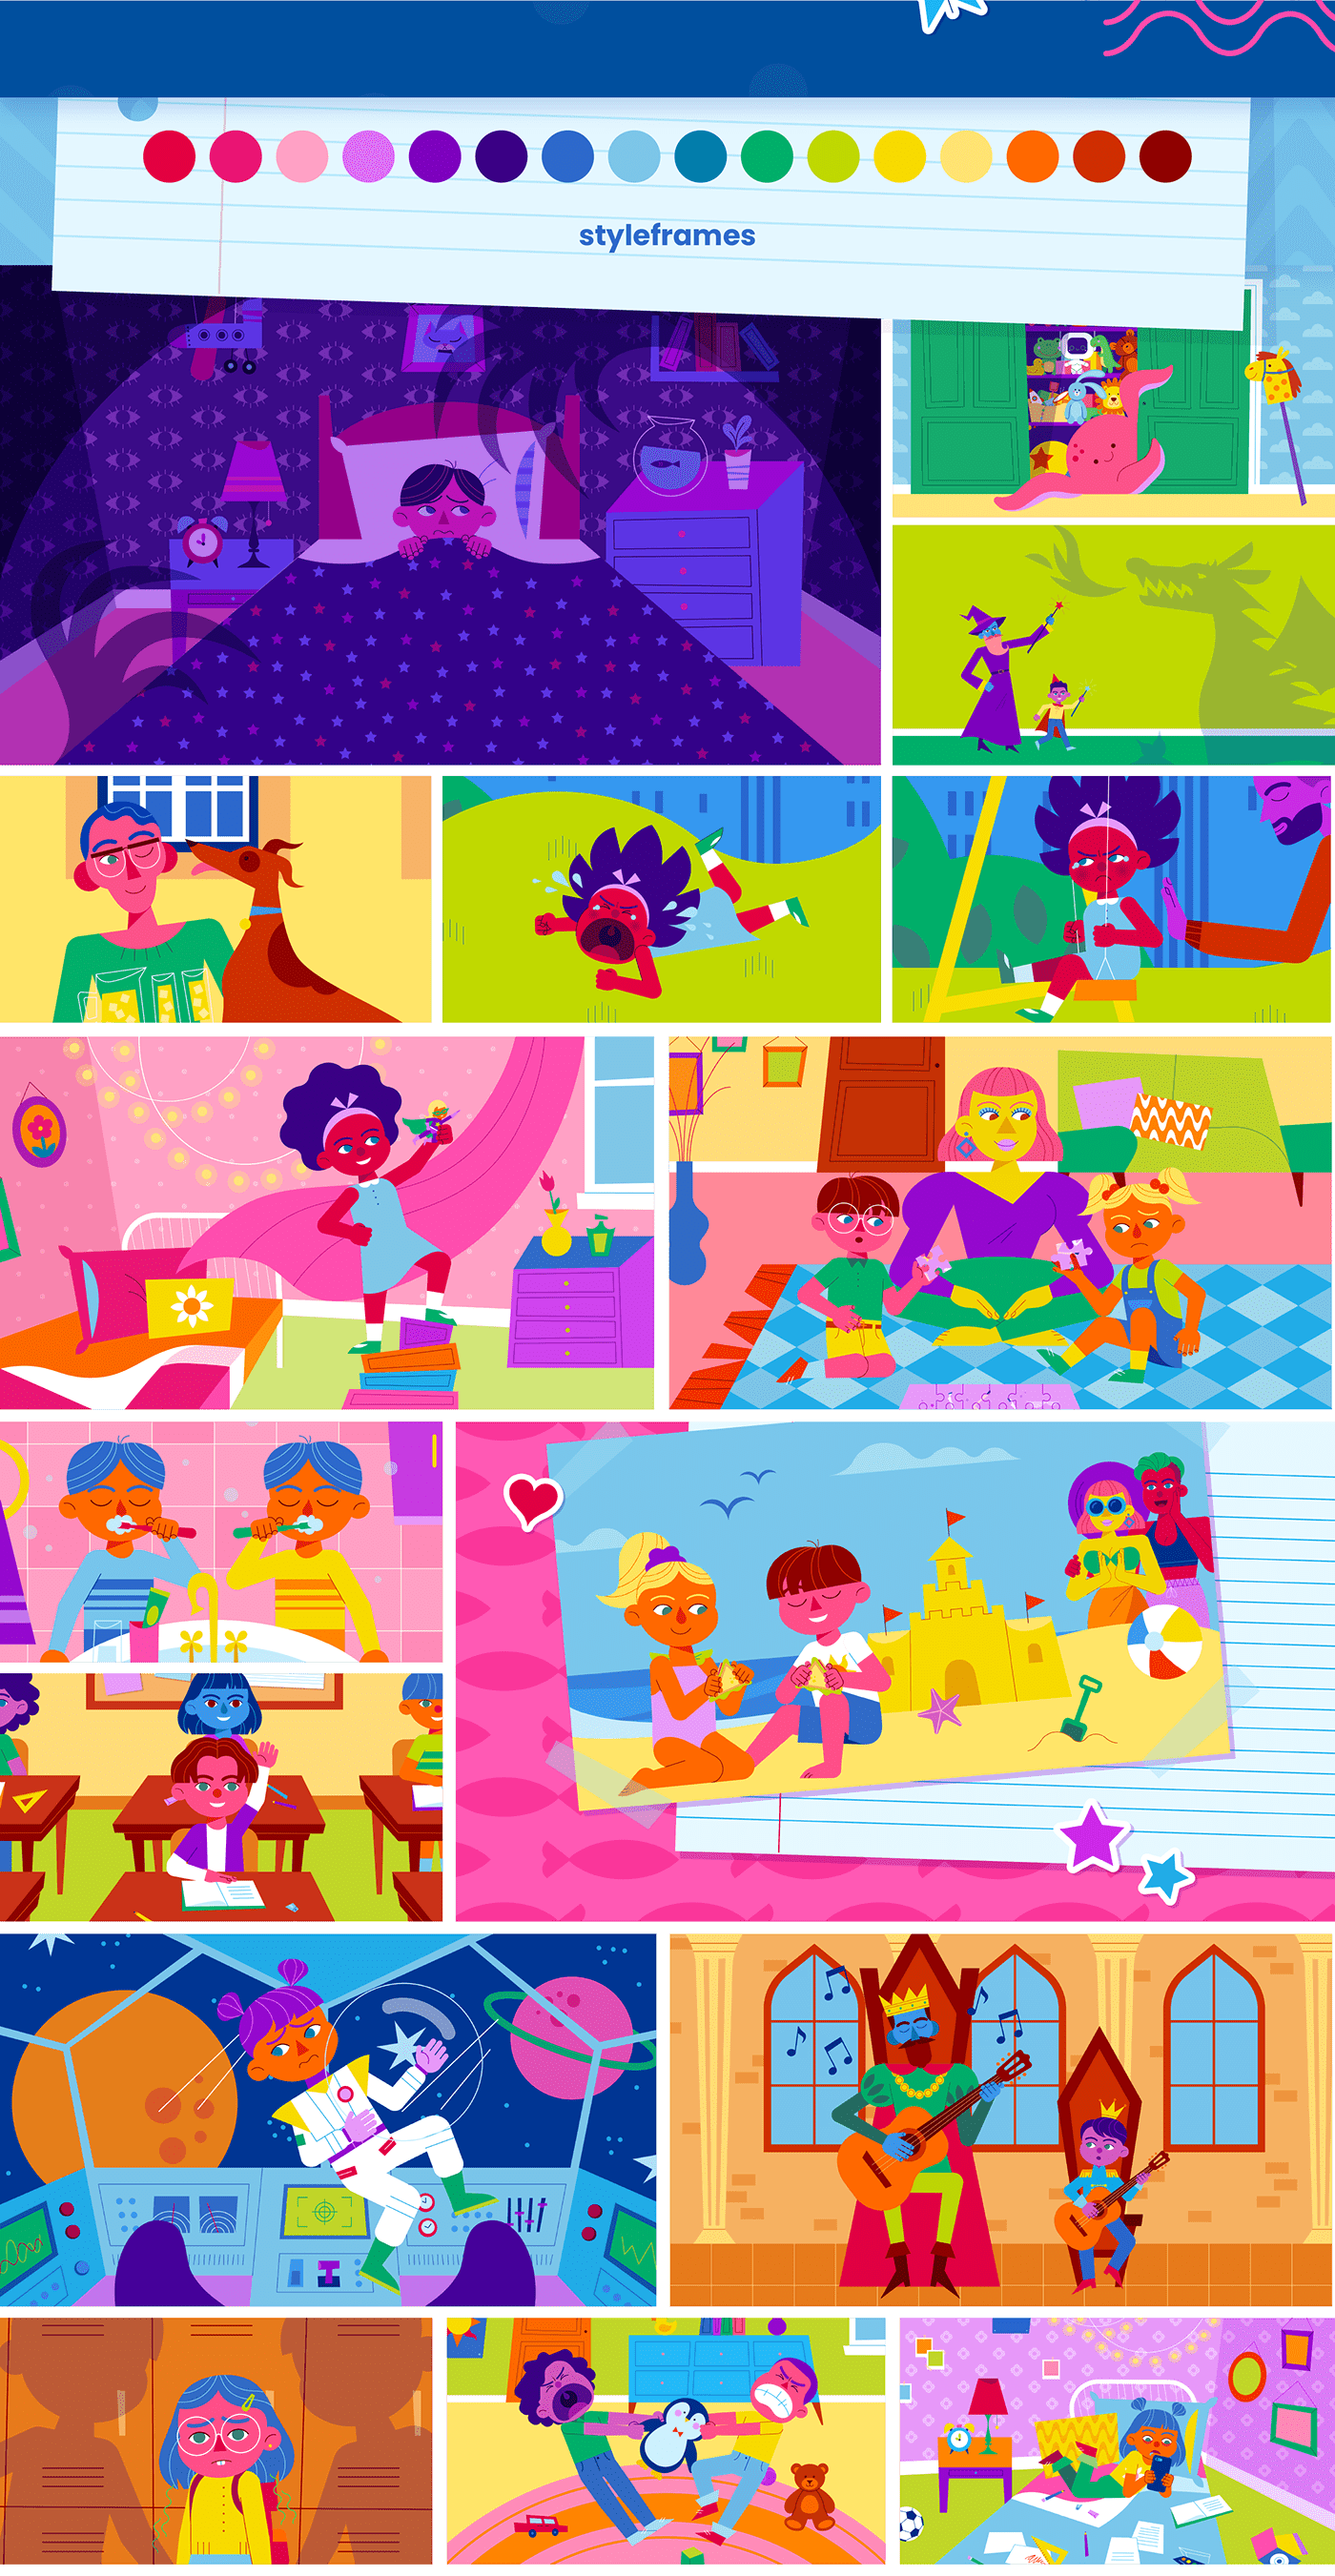 2D 2D Animation animation  character animation Character design  digital illustration Education ILLUSTRATION  kids parenting